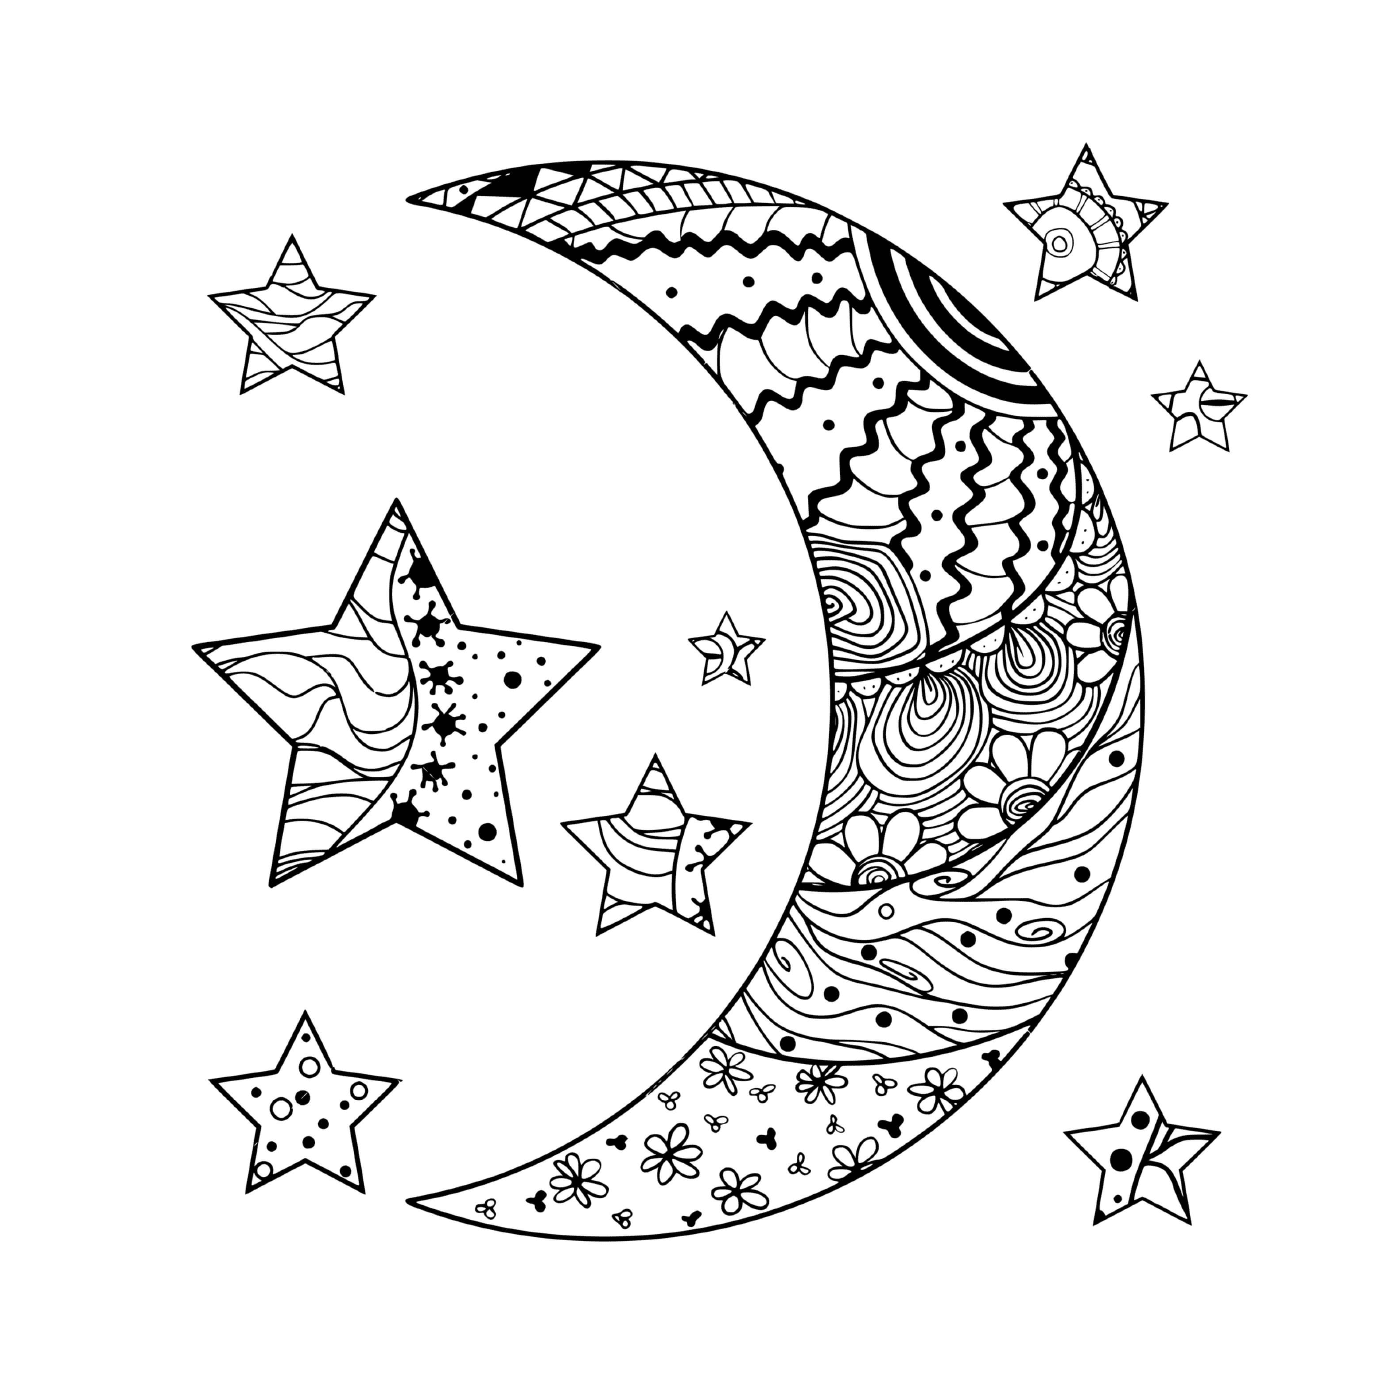  Mezzaluna lunare e stelle con schemi astratti 